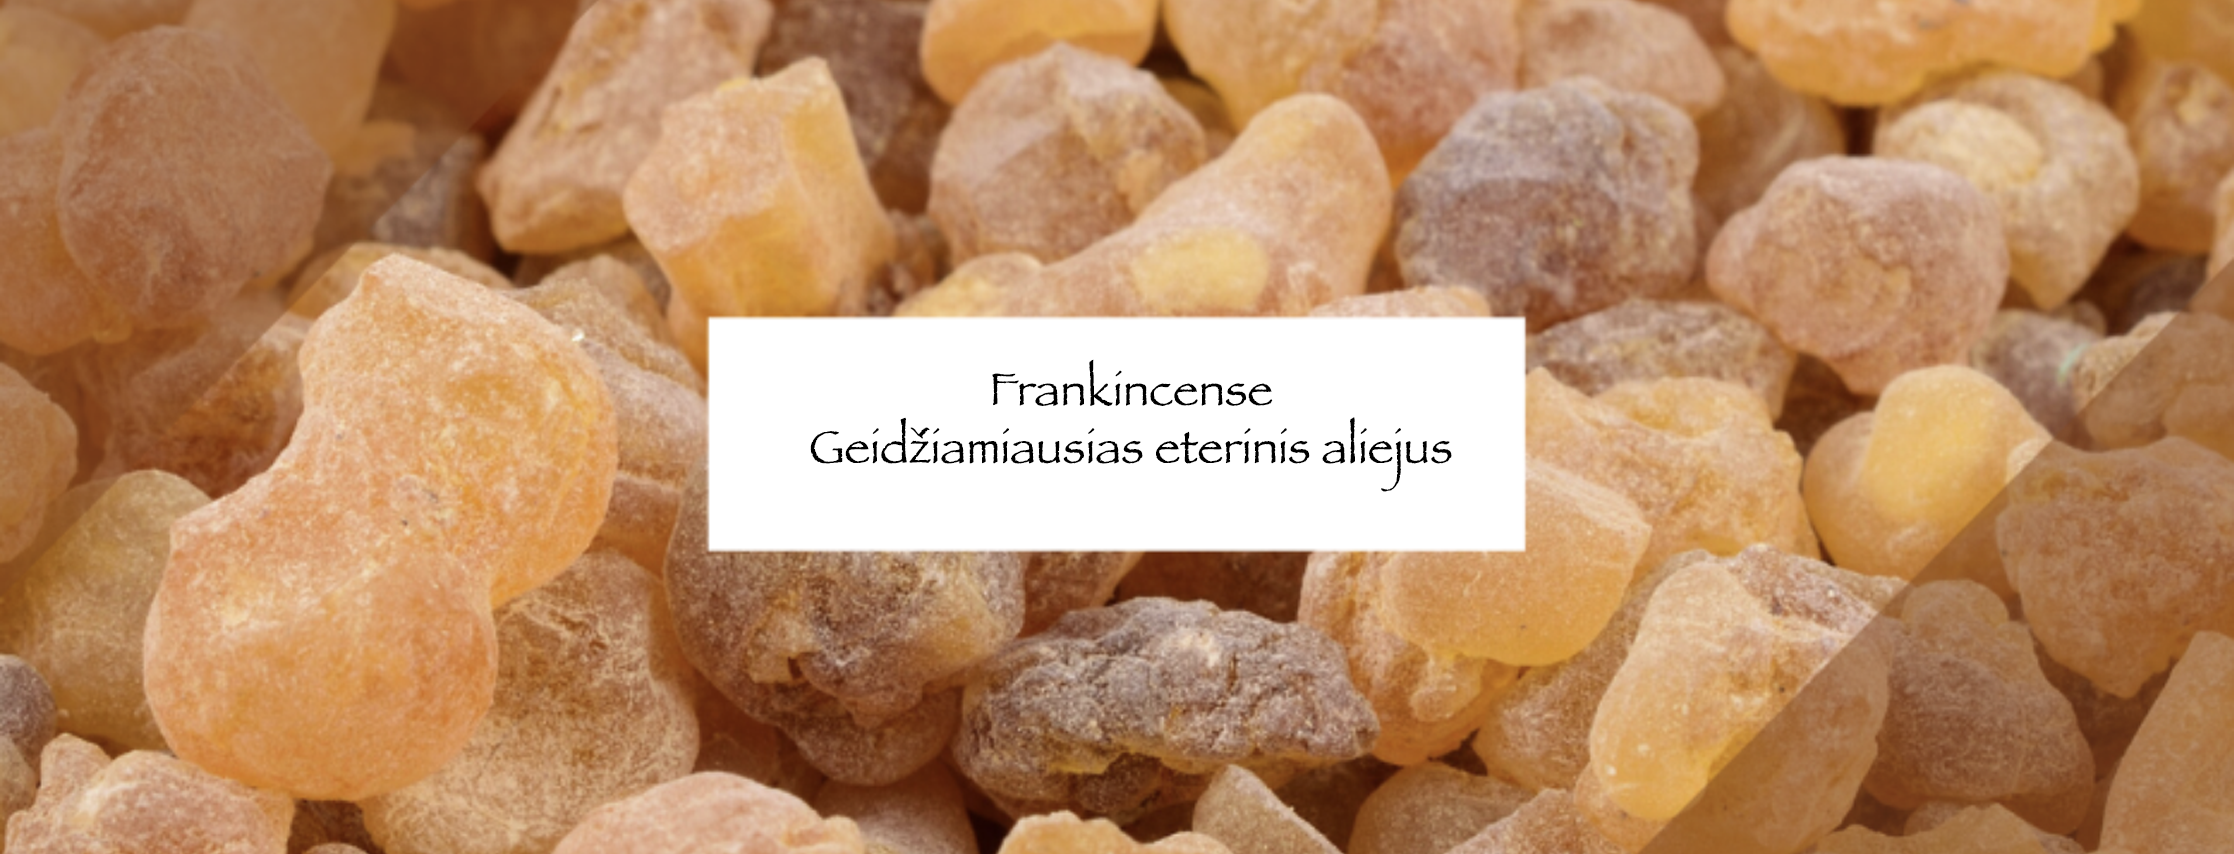 “Frankincense” Kodėl šis antikinis eterinis aliejus aktualus šiandien?